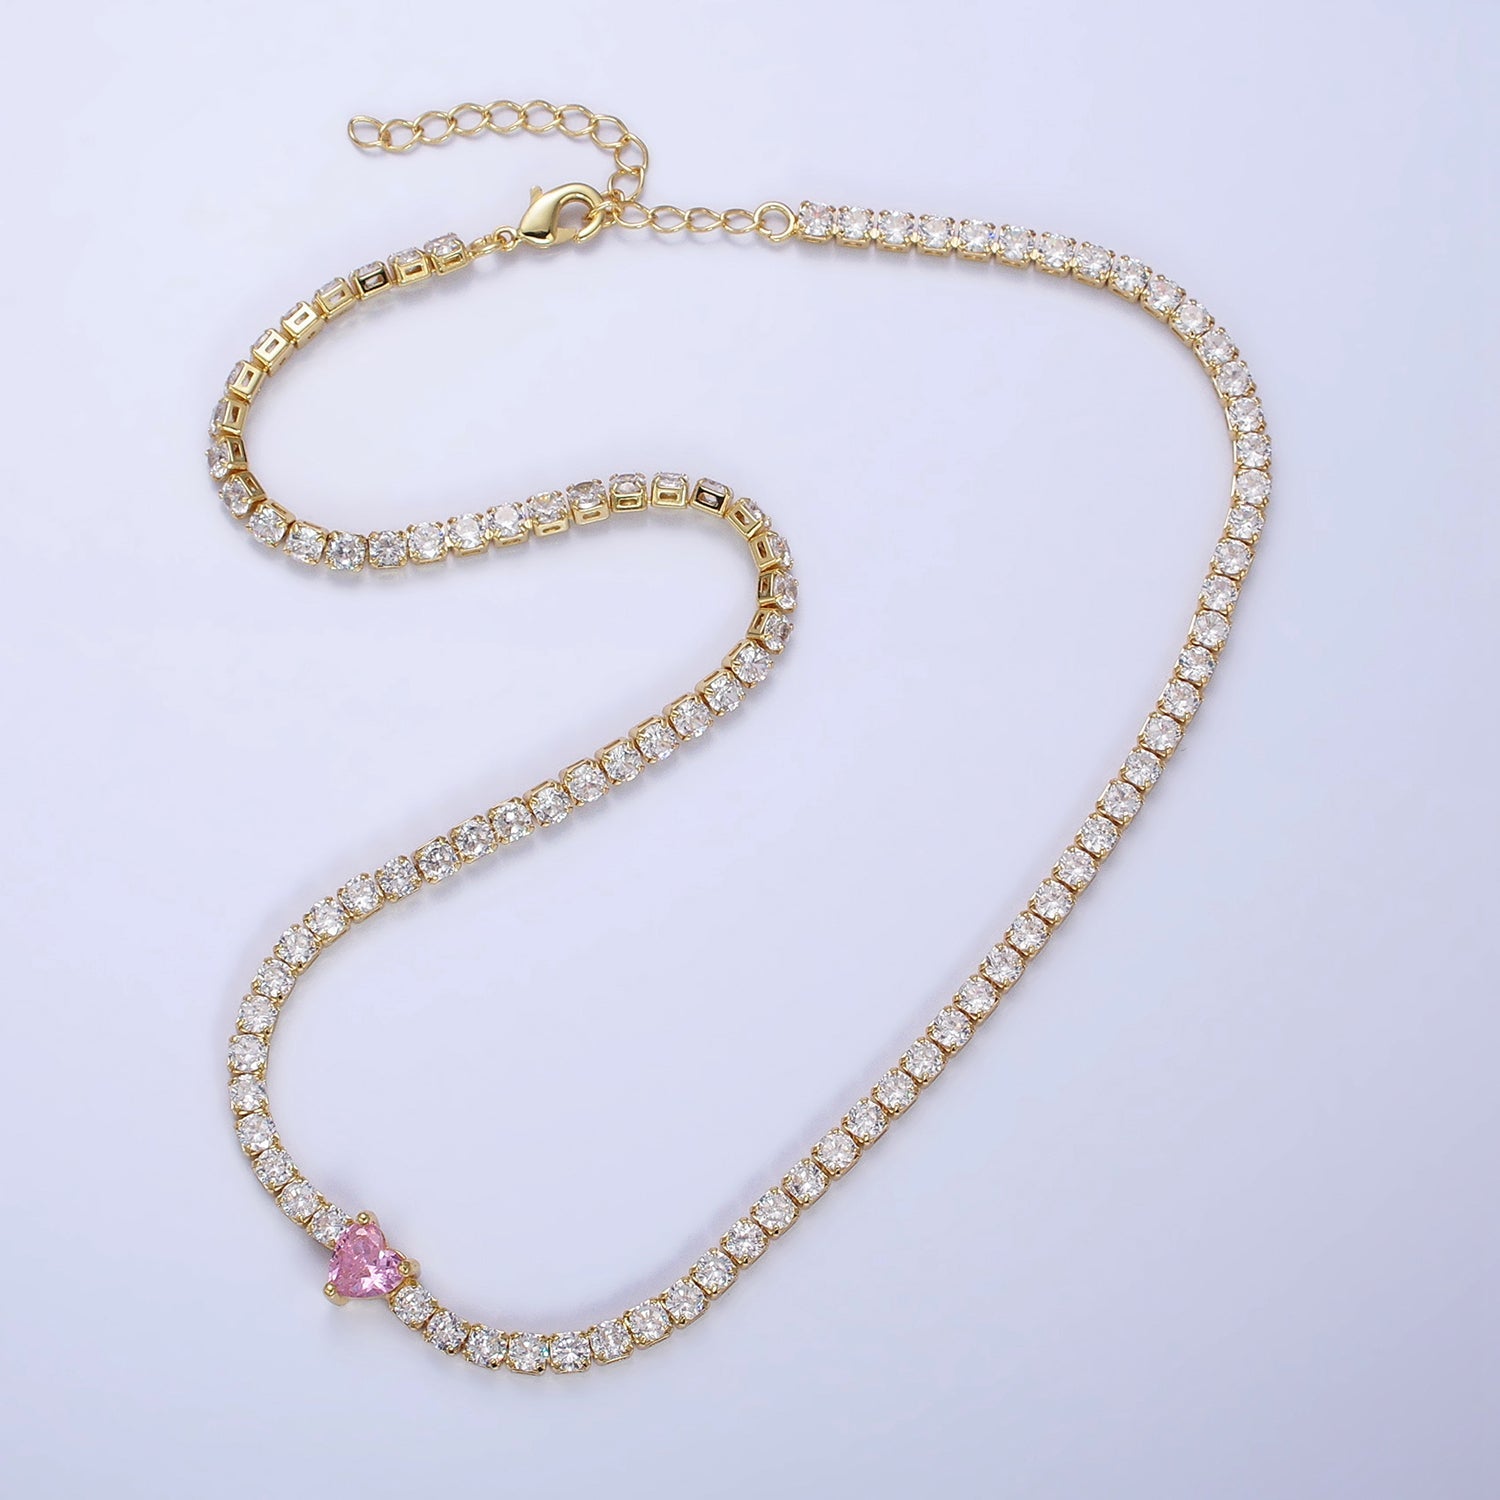 24K Gold Filled Pink CZ Heart Valentine Tennis Chain 13.5mm Choker Statement Necklace | WA-1673 - DLUXCA